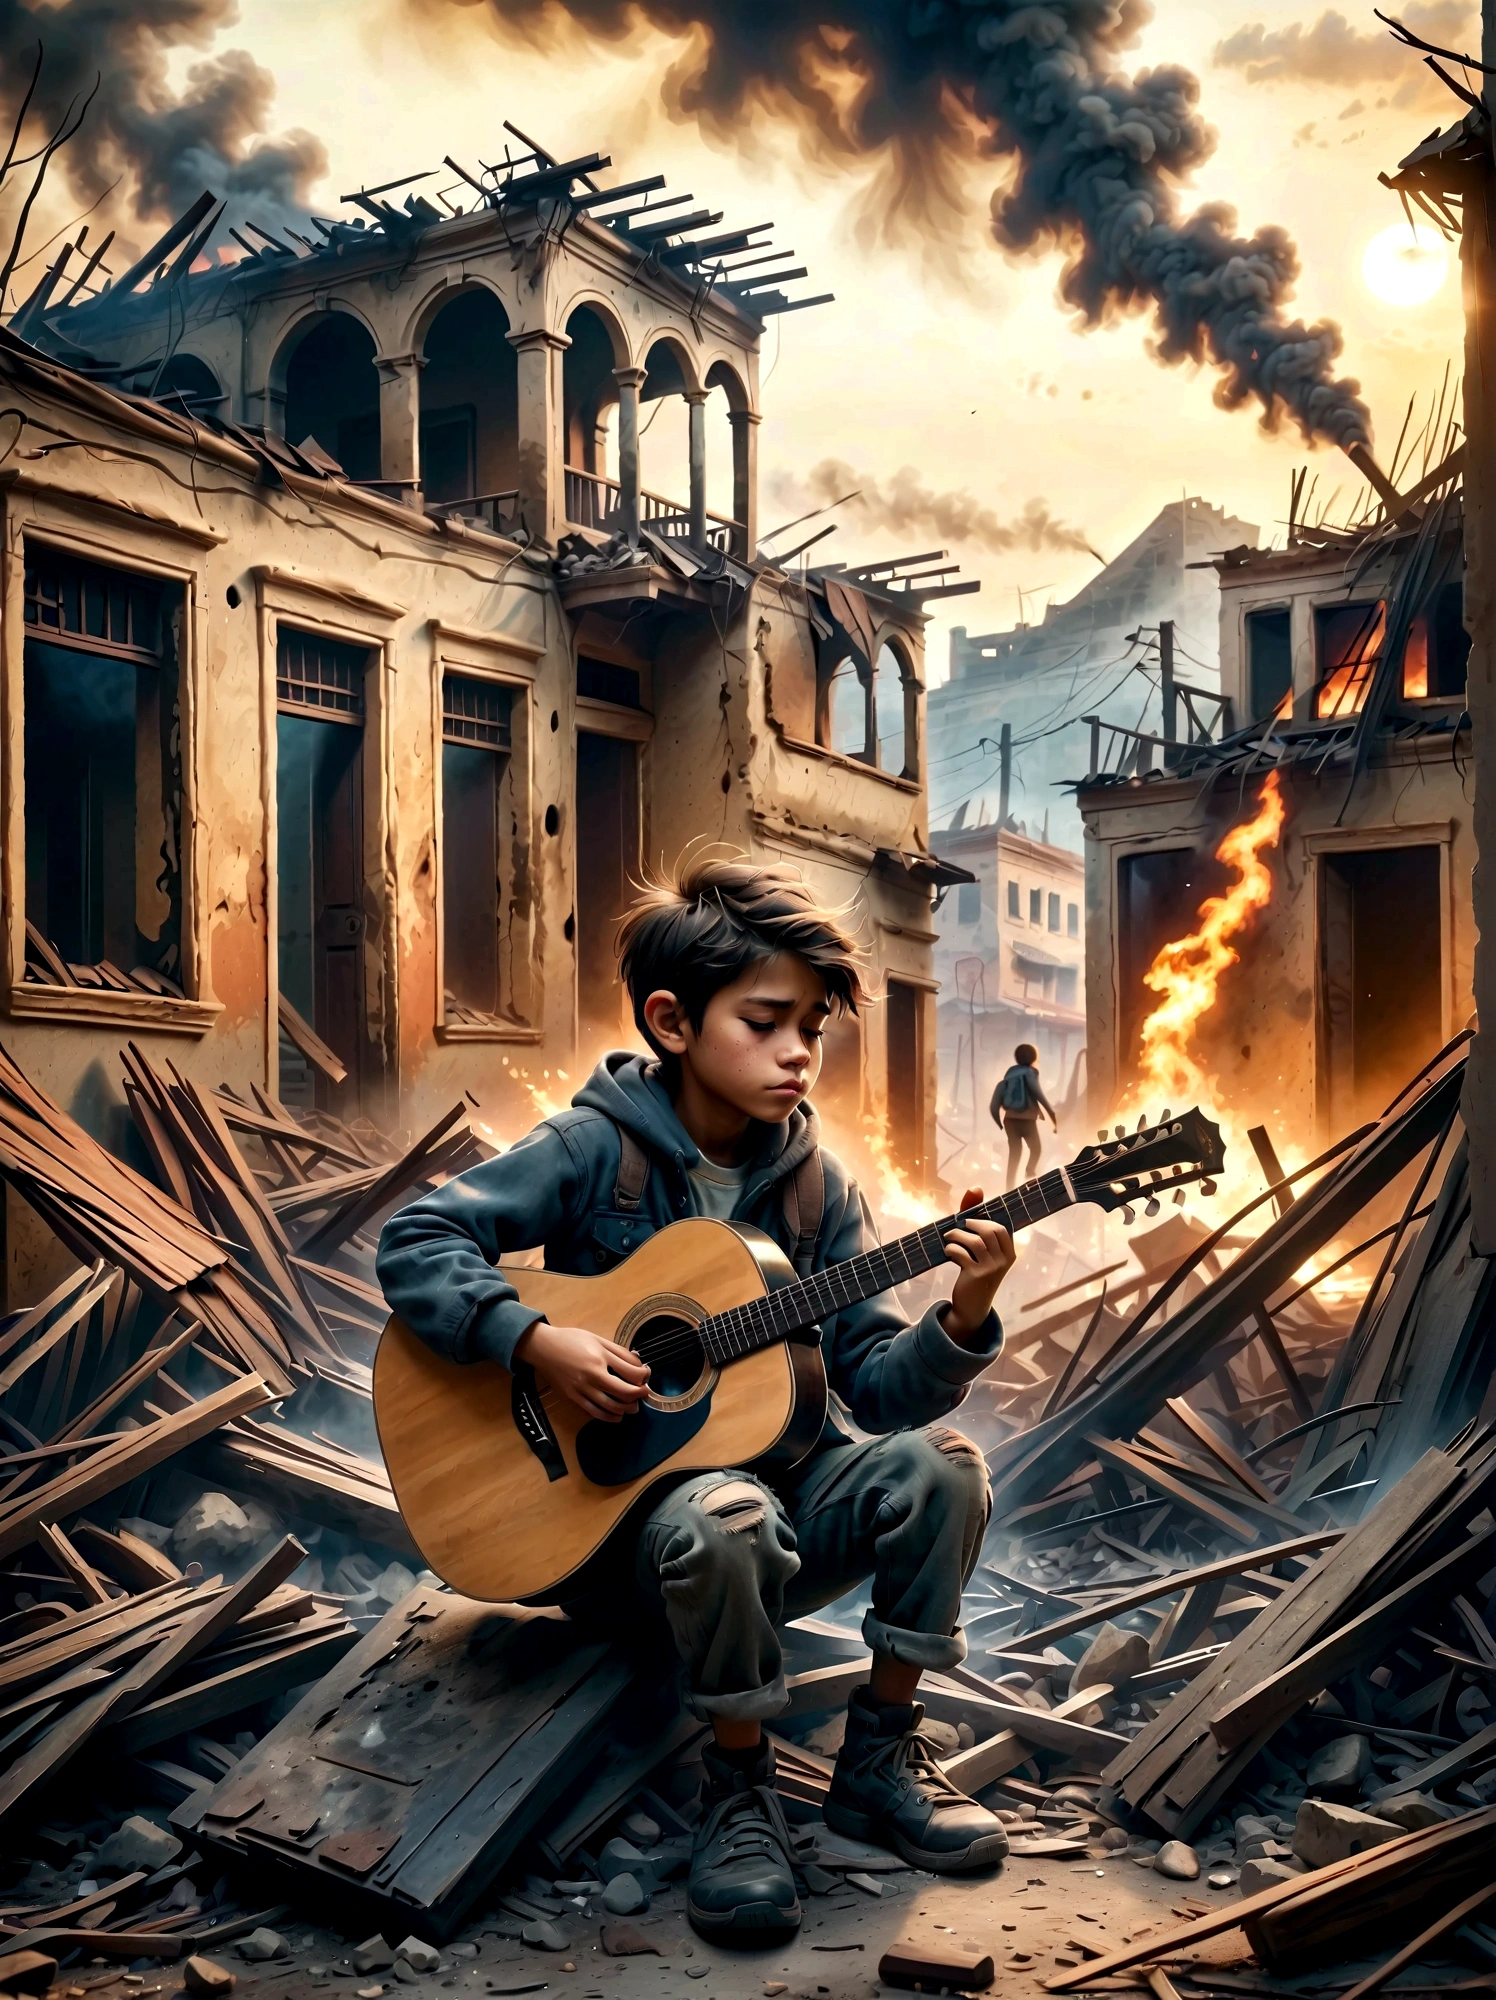 Посреди раздираемой войной, дымные руины, ребенок играет на гитаре. Сцена демонстрирует резкий контраст между опустошением окружающей среды и невинностью людей. . Руины заполнены обломками и остатками построек., с дымом и огнем на заднем плане. Выражение лица ребенка мрачное, отражающее суровую реальность ситуации. Общее настроение острое и эмоциональное., с приглушенными цветами и драматическим освещением, чтобы подчеркнуть отчаяние и проблеск надежды, представленные музыкой..